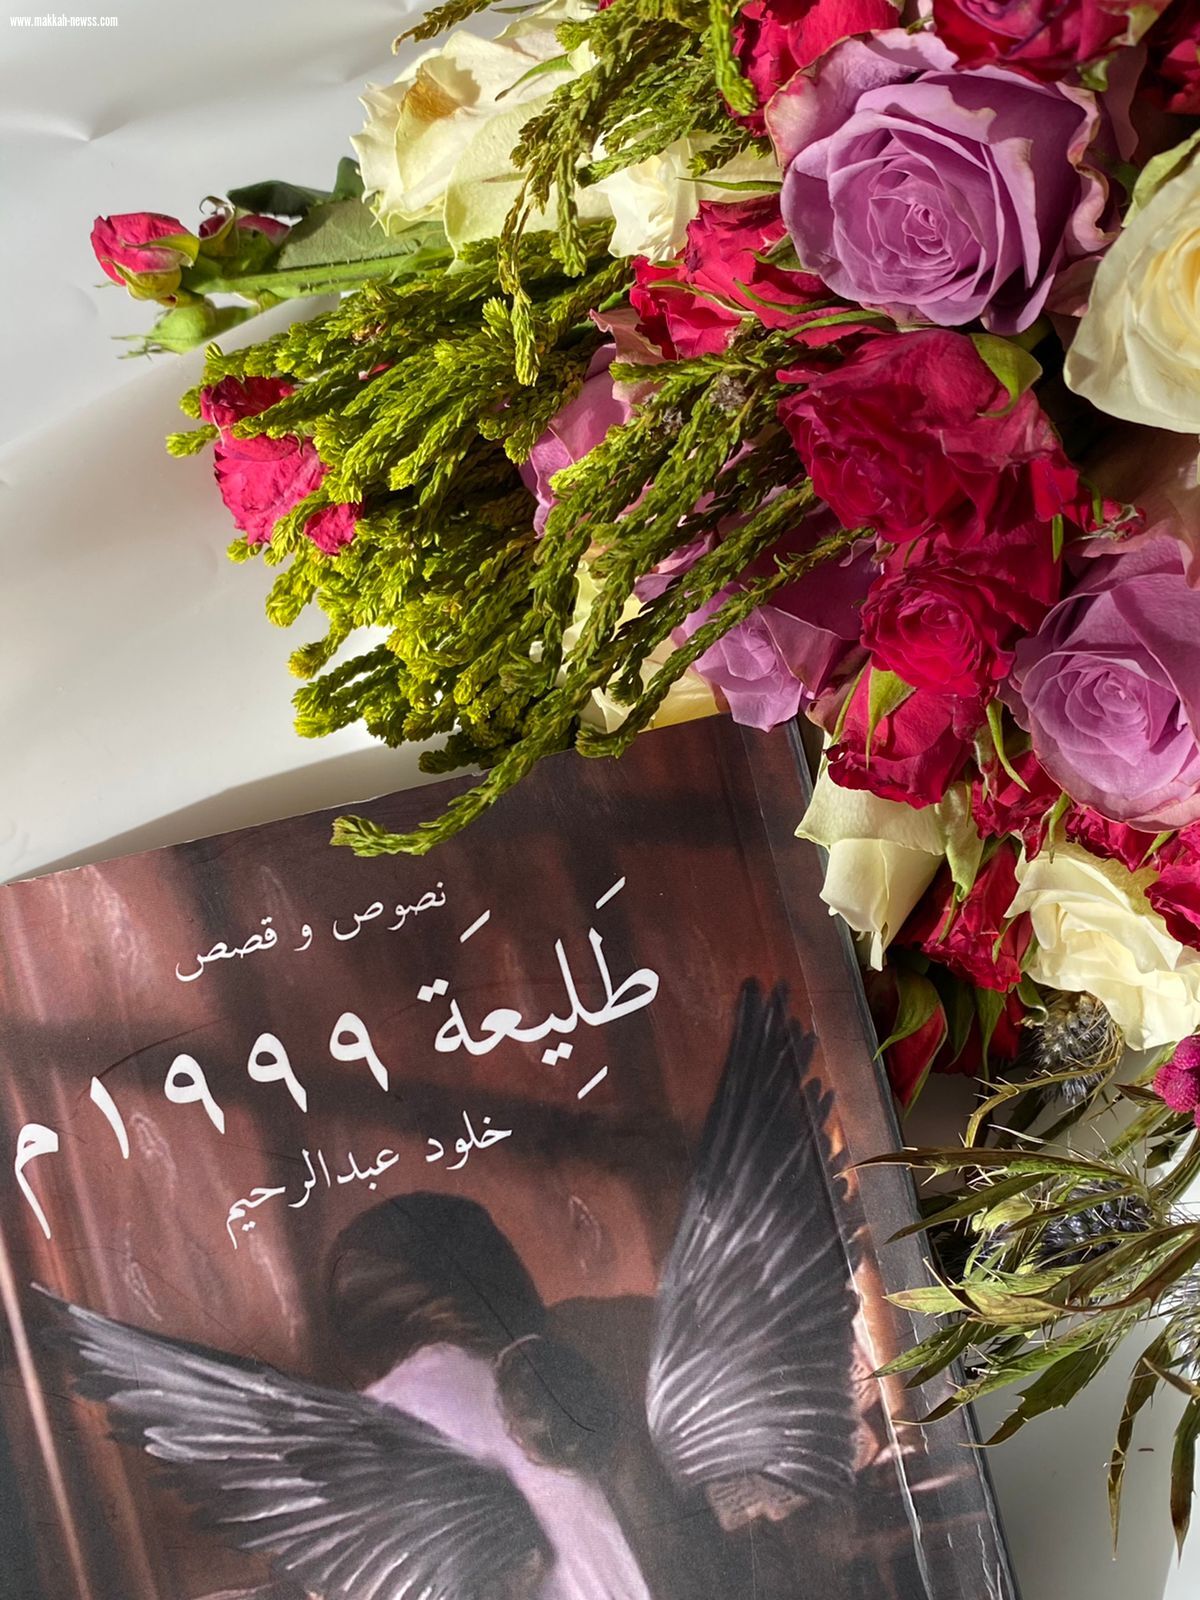 صحيفة صوت مكة الاجتماعية تحاور الكاتبة خلود عبدالرحيم: _الكاتب الناجح في هذا الوقت هو من يستطيع إدارة دفة الترويج في منصات التواصل الاجتماعي .